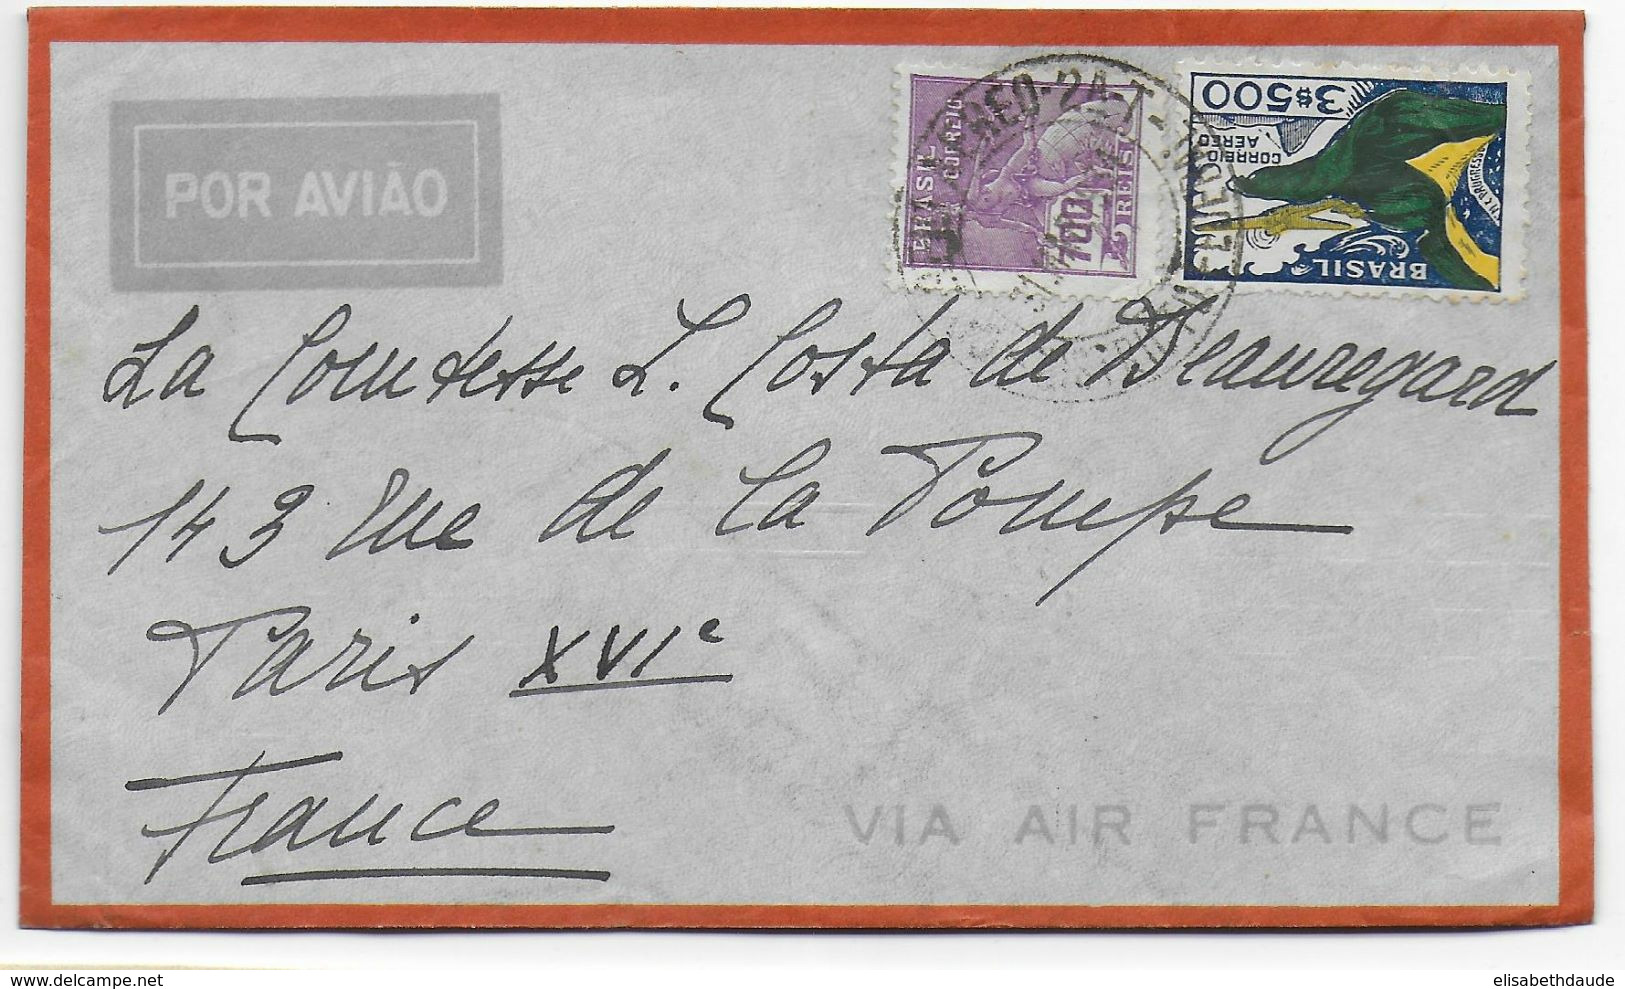 1934 - BRESIL - ENVELOPPE Par AVION AIR FRANCE Avec CACHET "AIR FRANCE RIO DE JANEIRO" Au DOS ! => PARIS - Covers & Documents